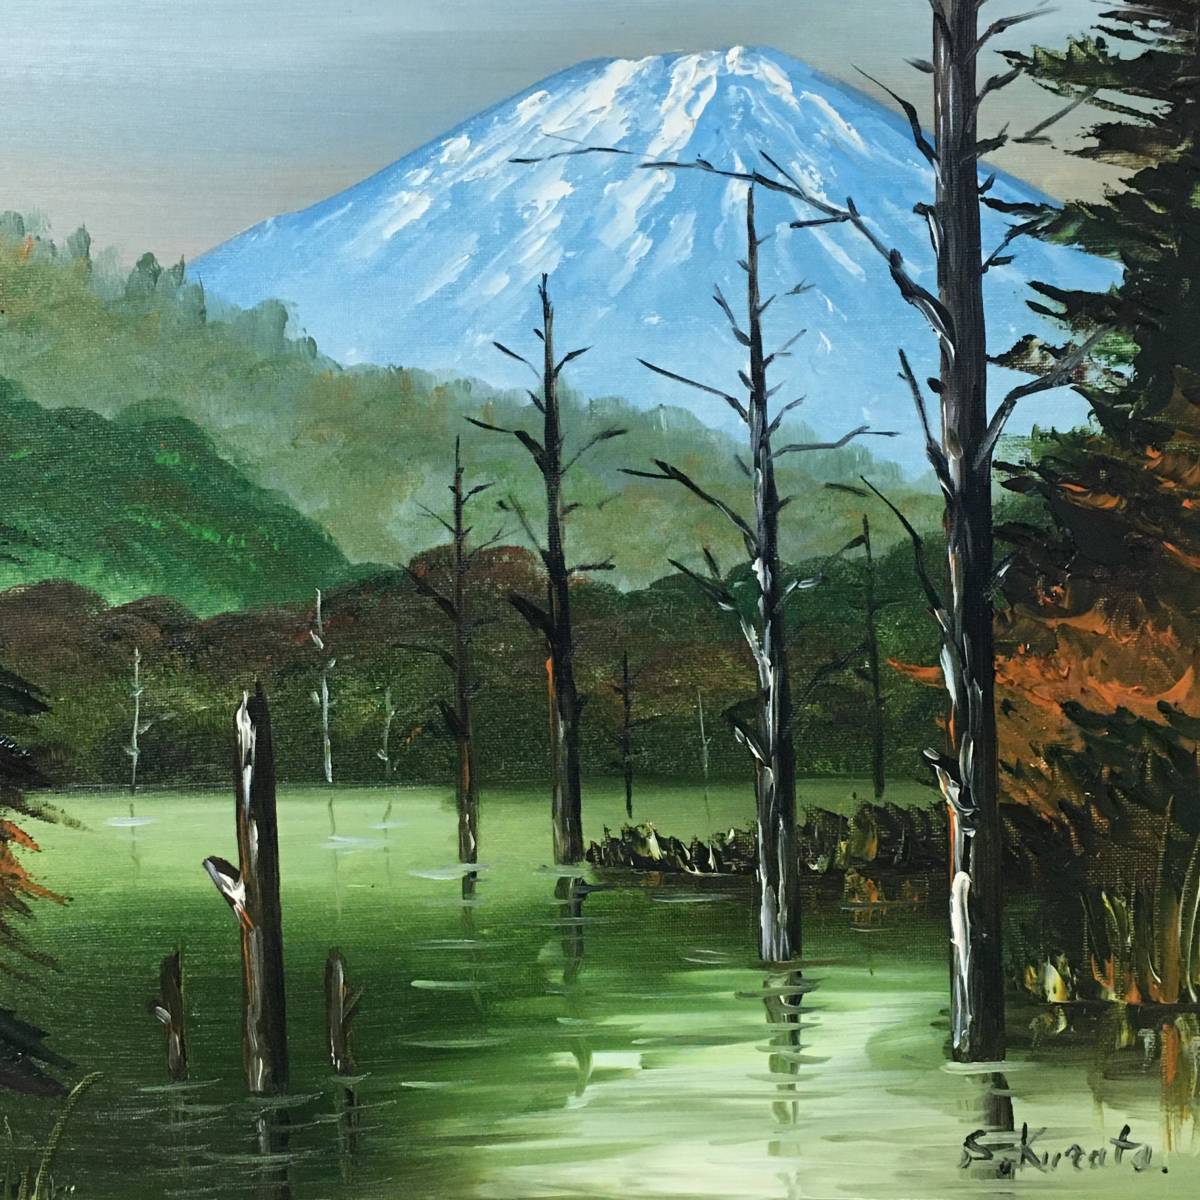 保障できる 「野辺山高原」F8 雨の山湖」絵画 油絵「水郷風景」1982